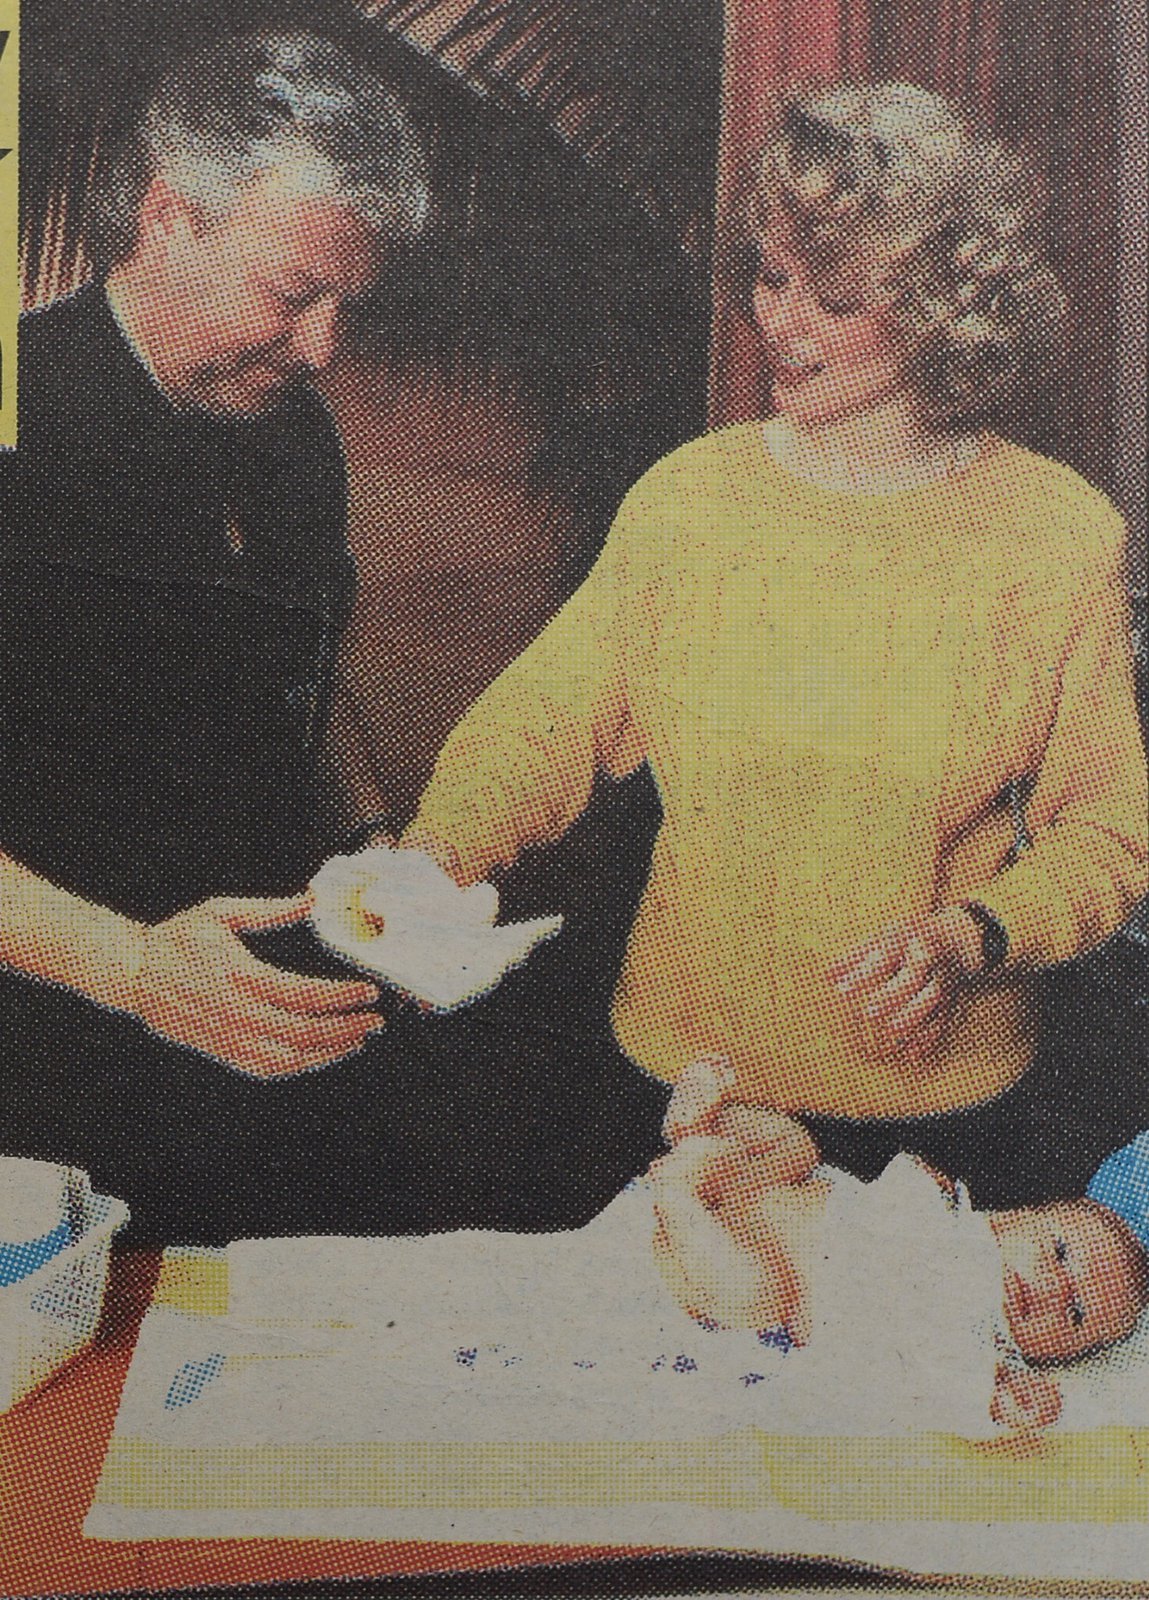 1992 - Drobný s druhou manželkou Marcelou a malým Milánkem.